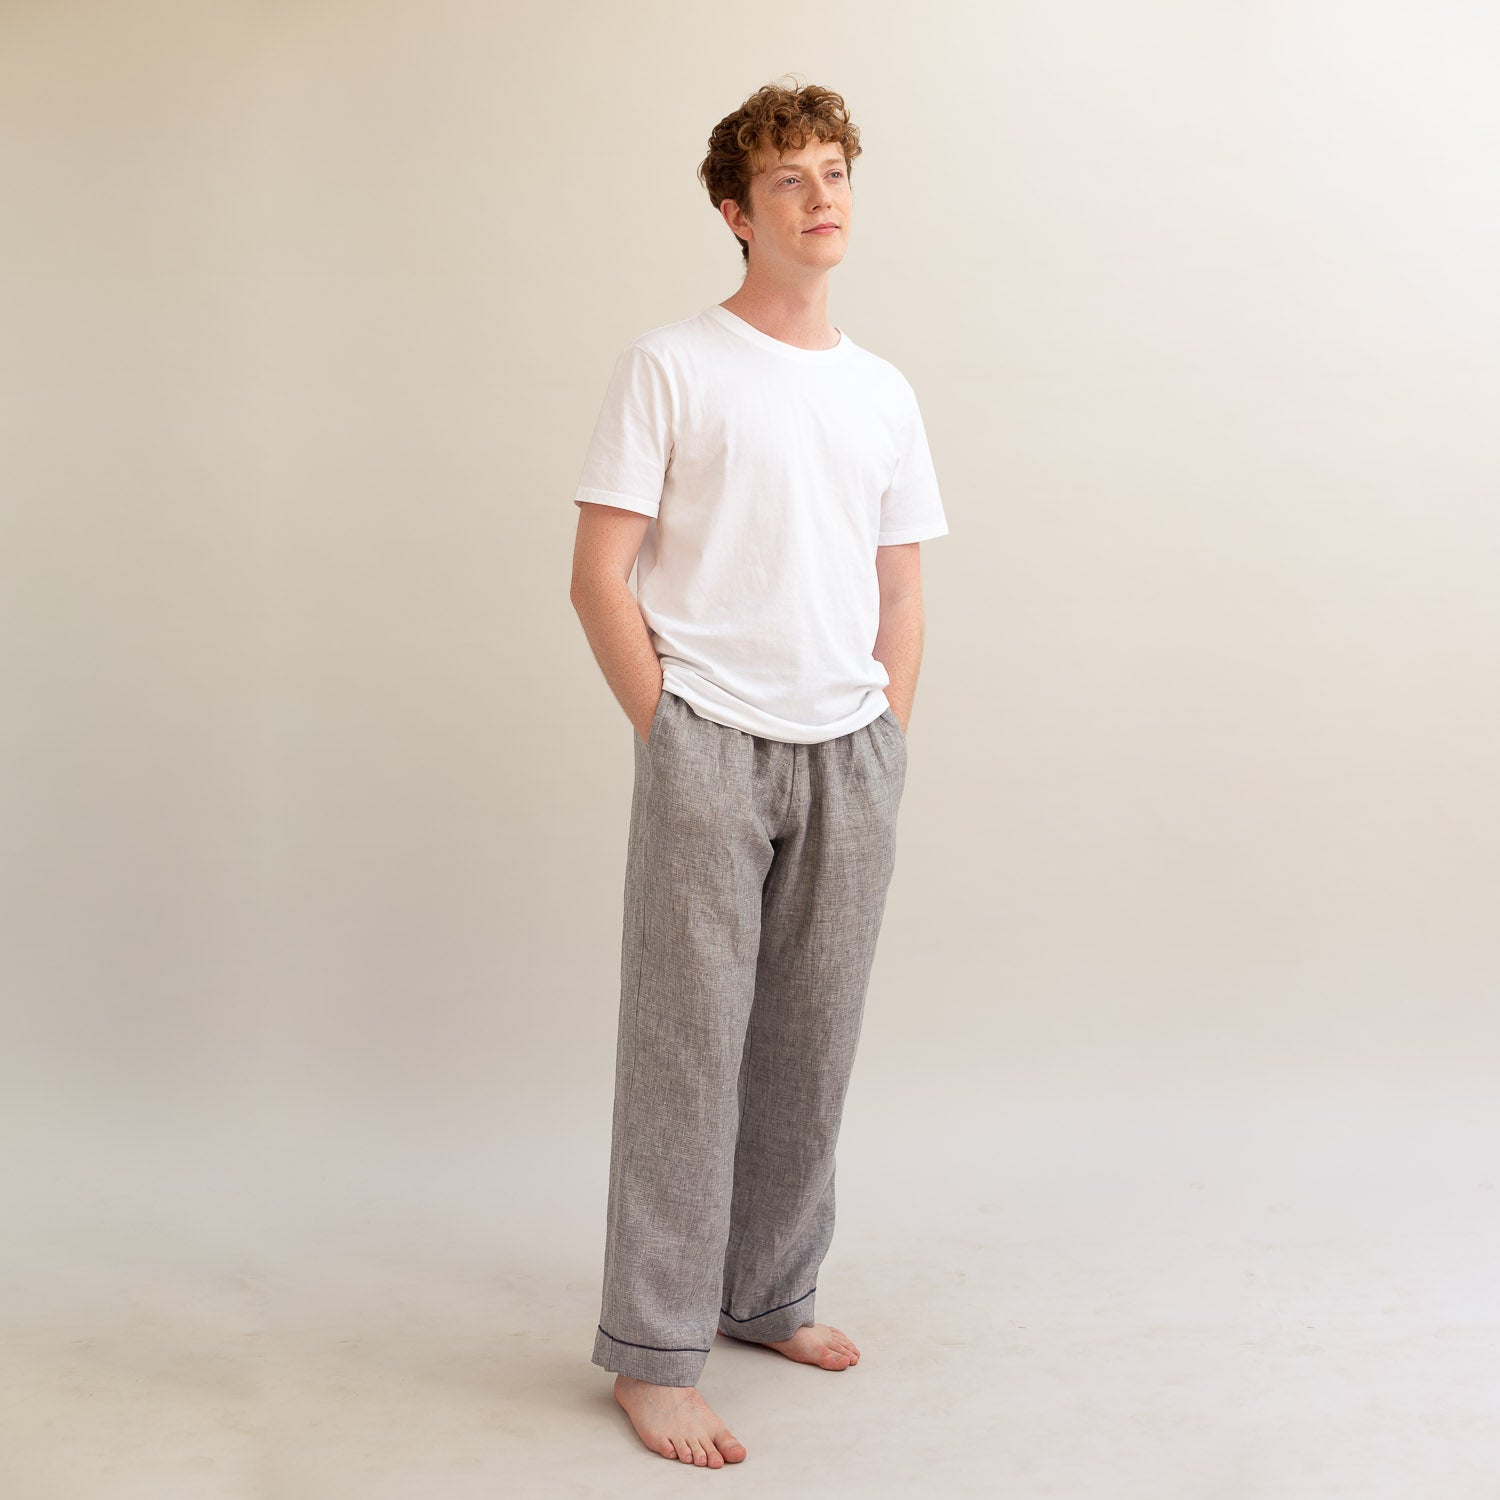 Buy Urbana Men Linen Trousers at Amazon.in